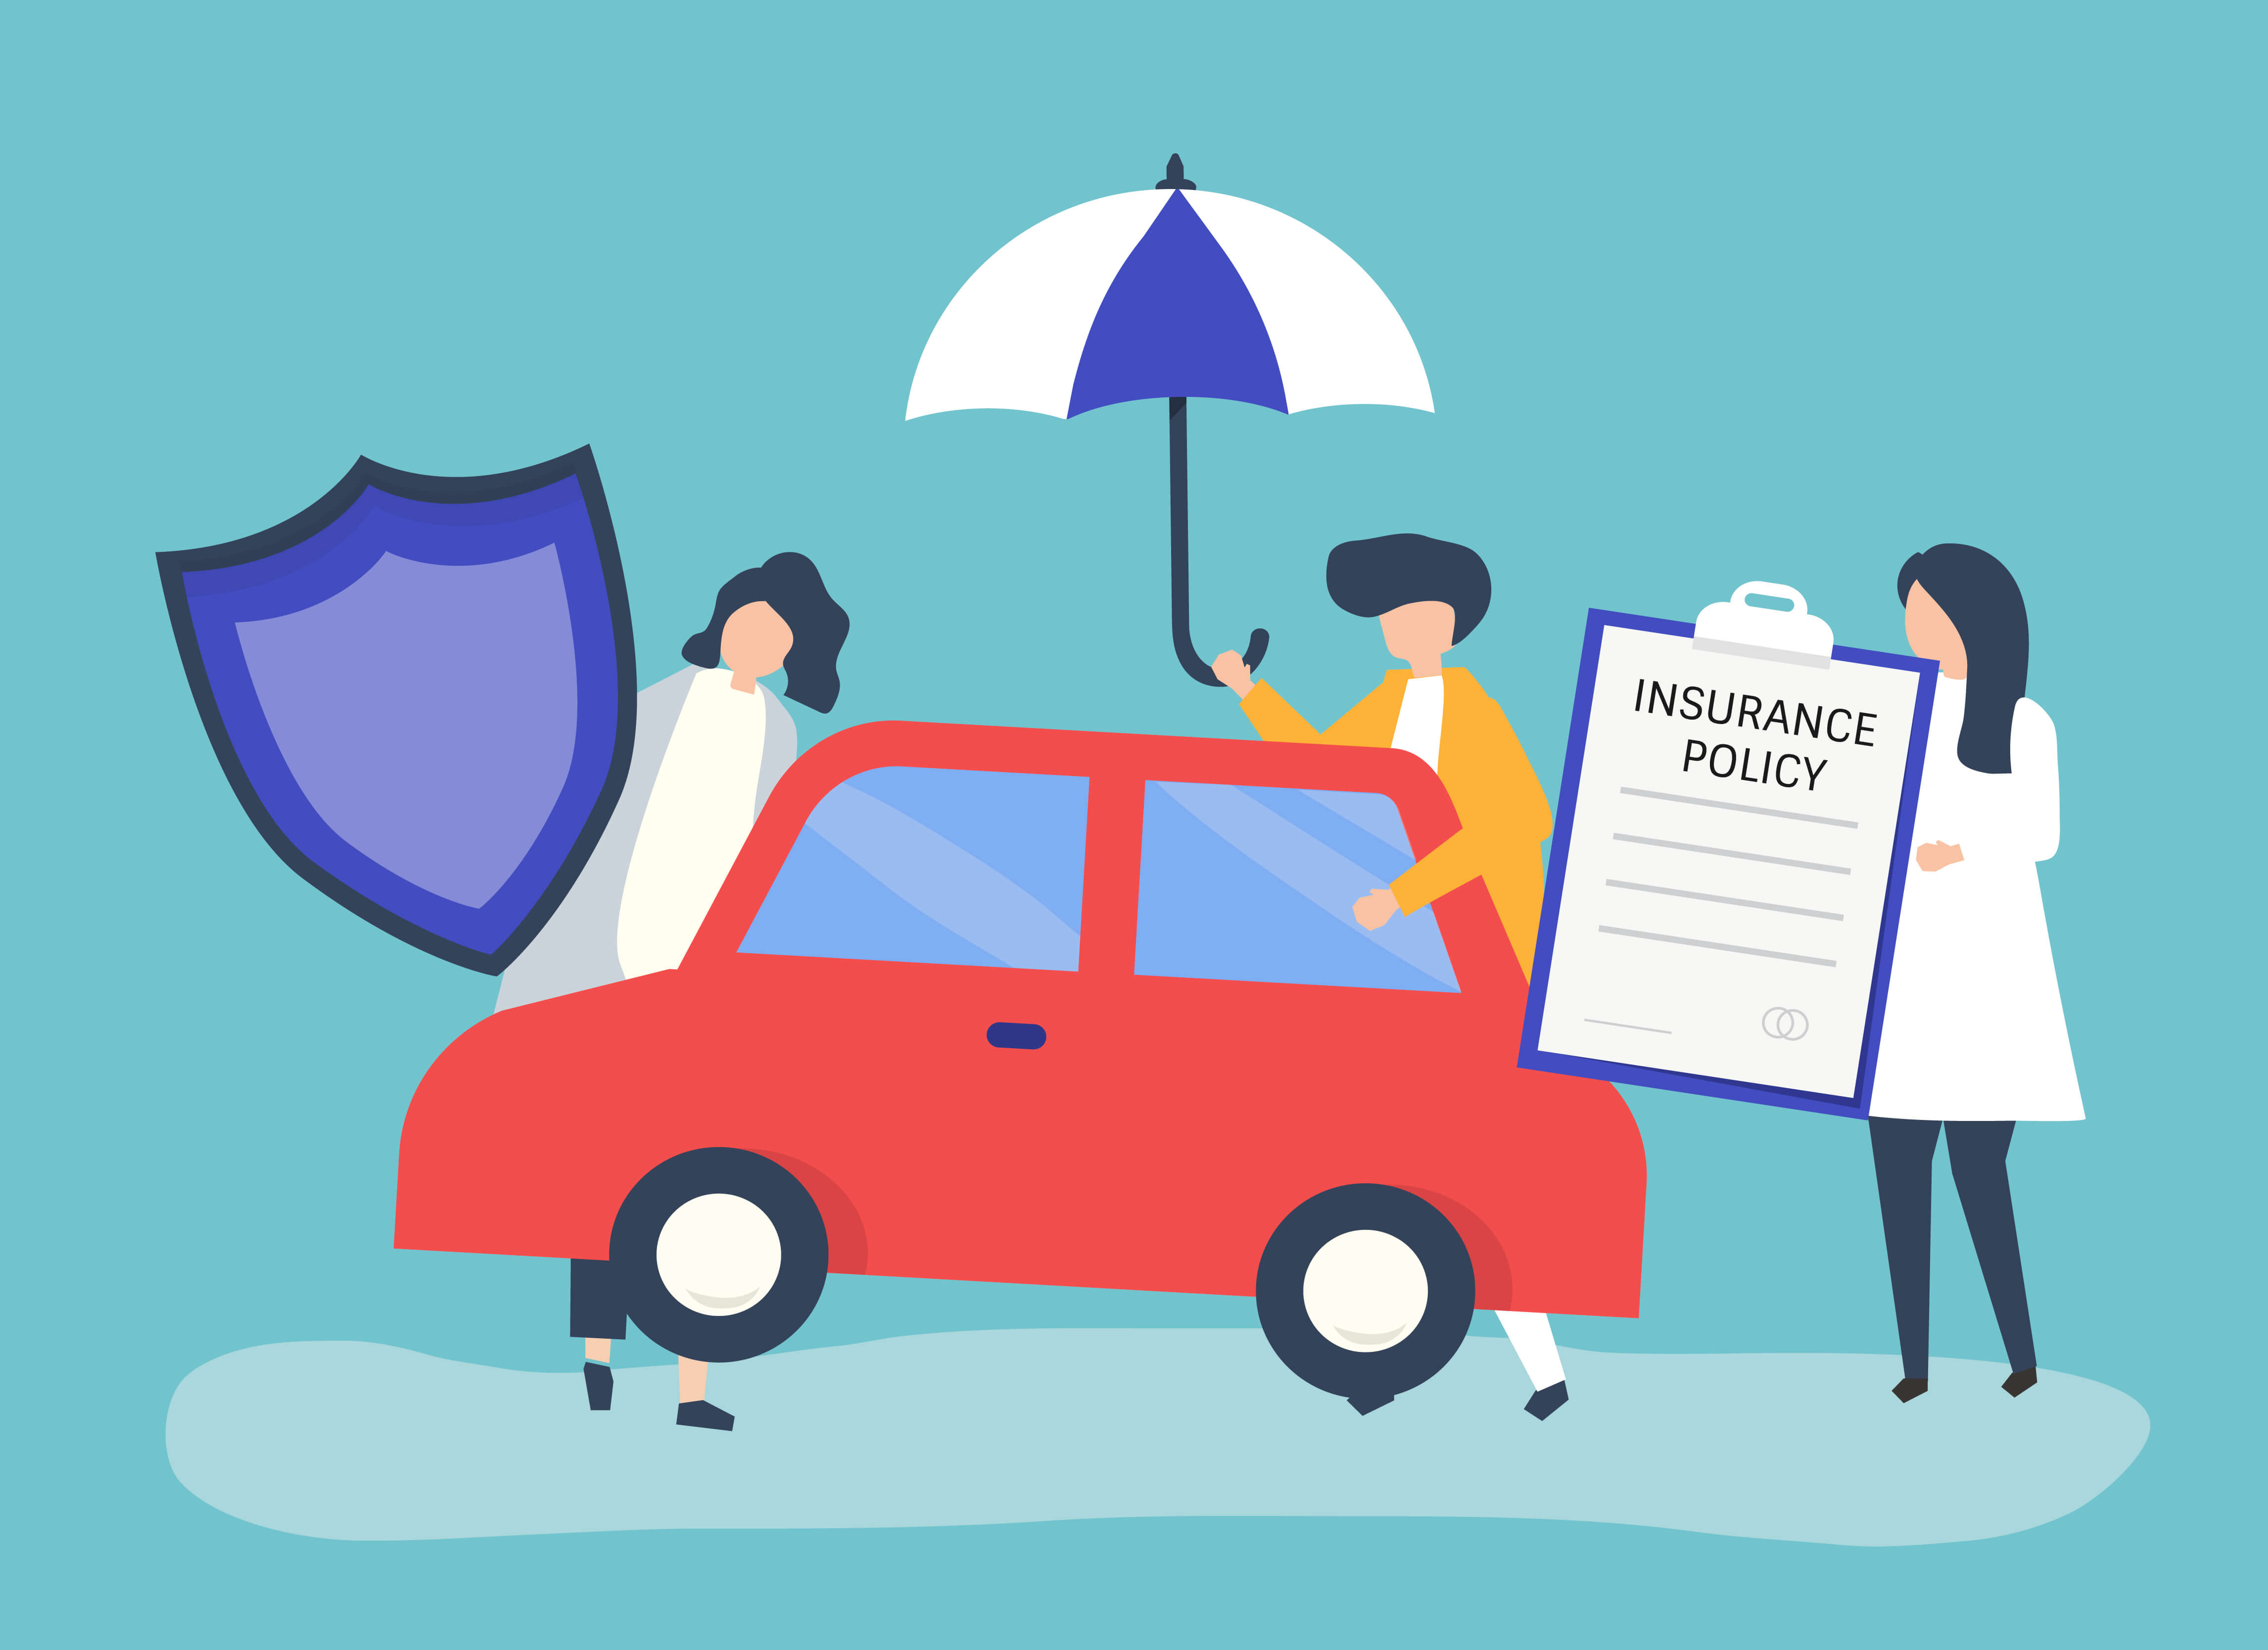 Motor insurance policies in Kolkata